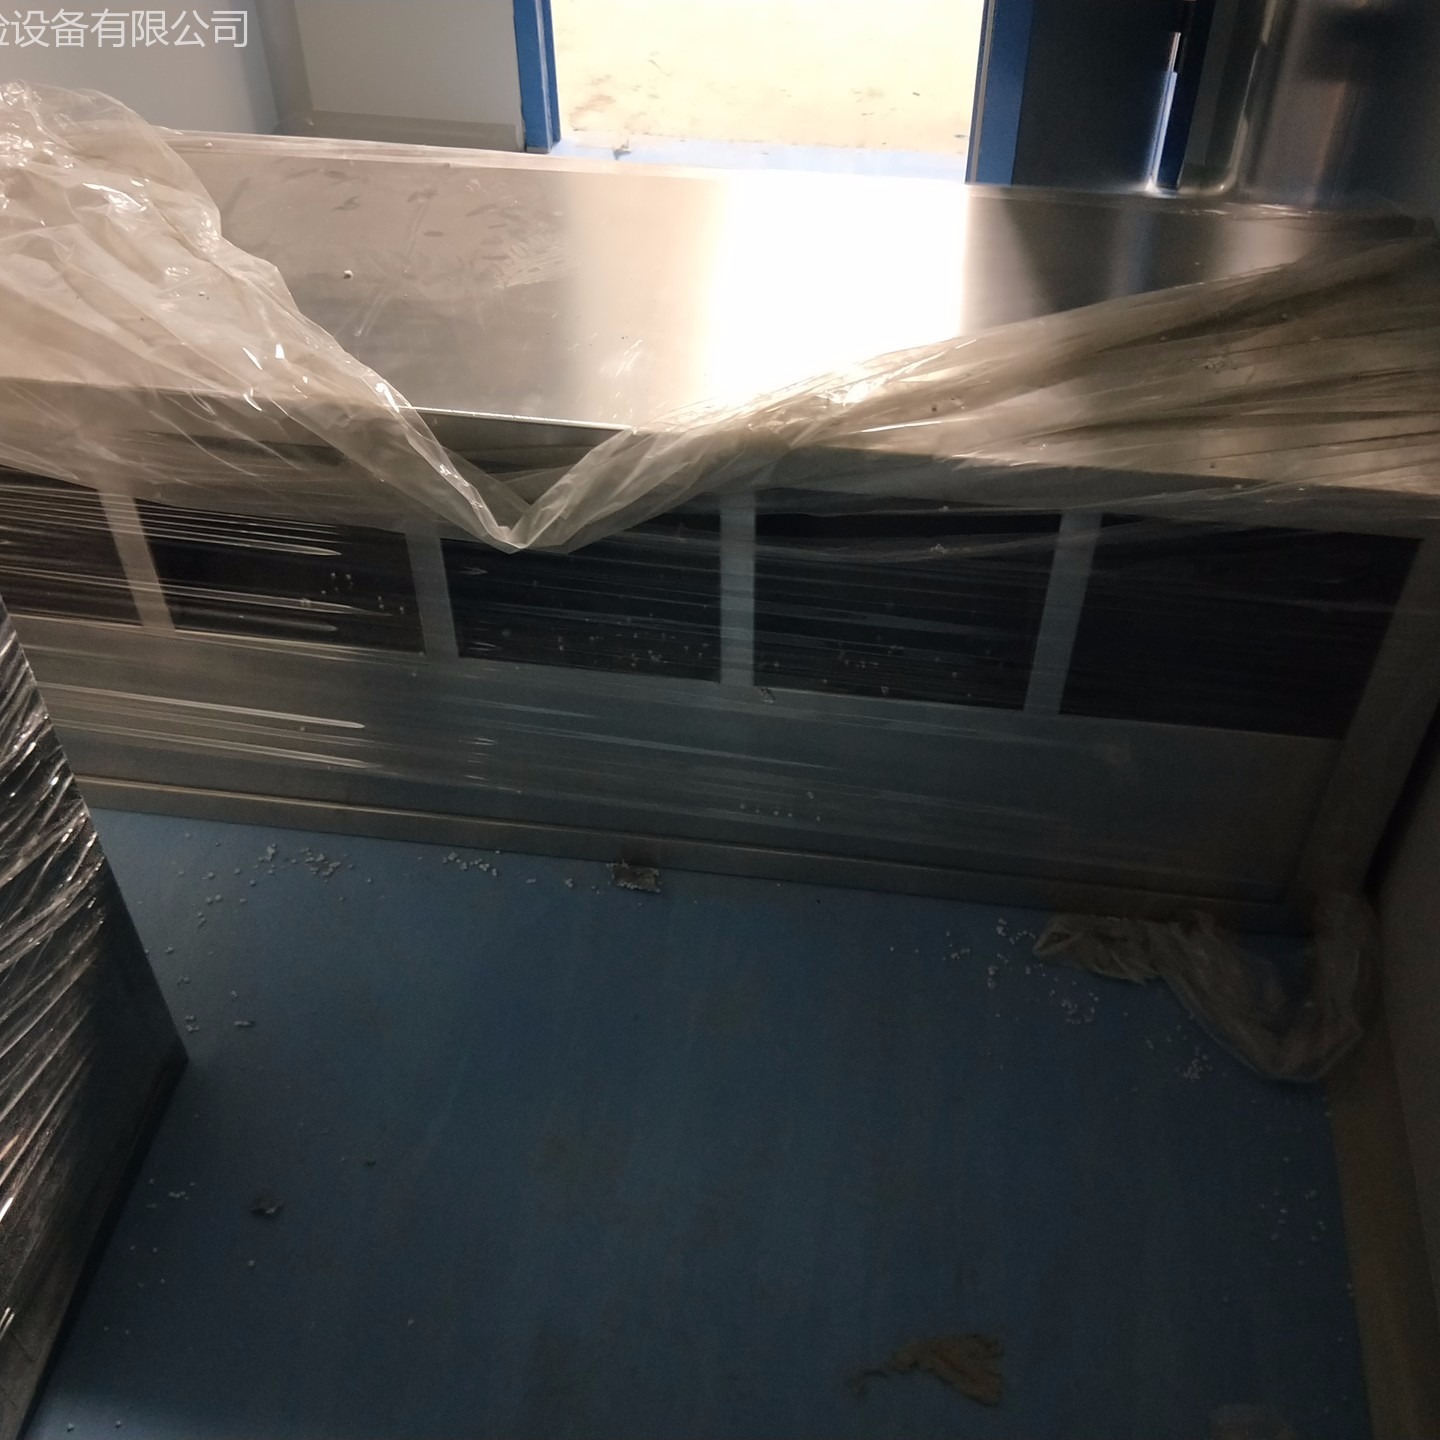 医院实验桌  不锈钢台   实验台批发   厂家销售价格  仪器台  边台 试剂柜 器皿柜 免费设计 测量